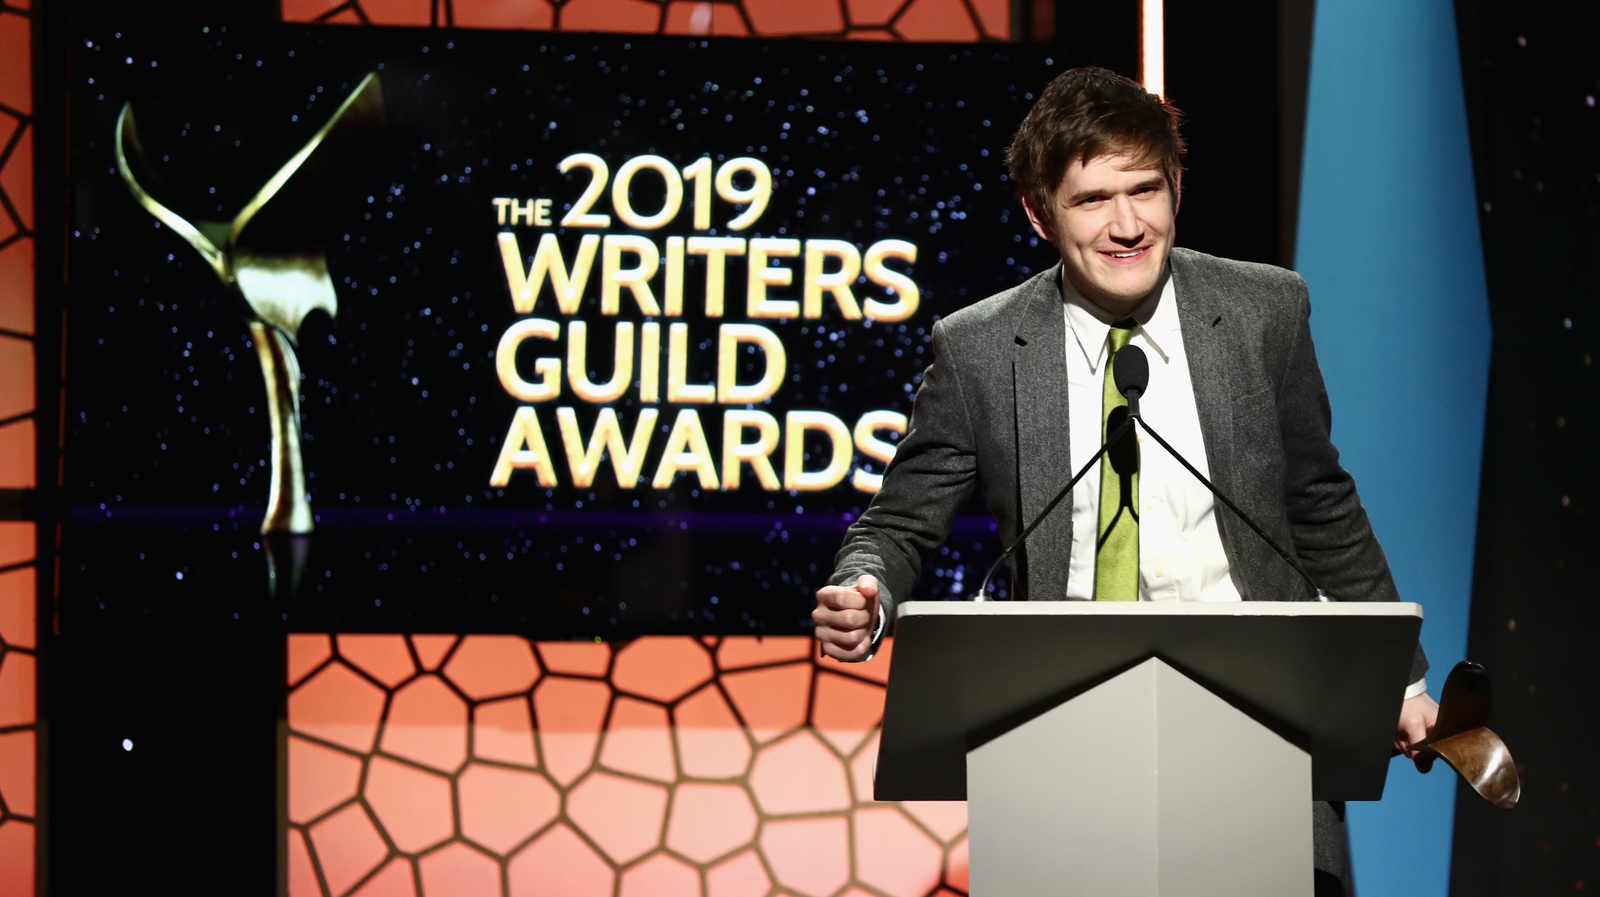 Writers Guild Of America Awards winner shocks